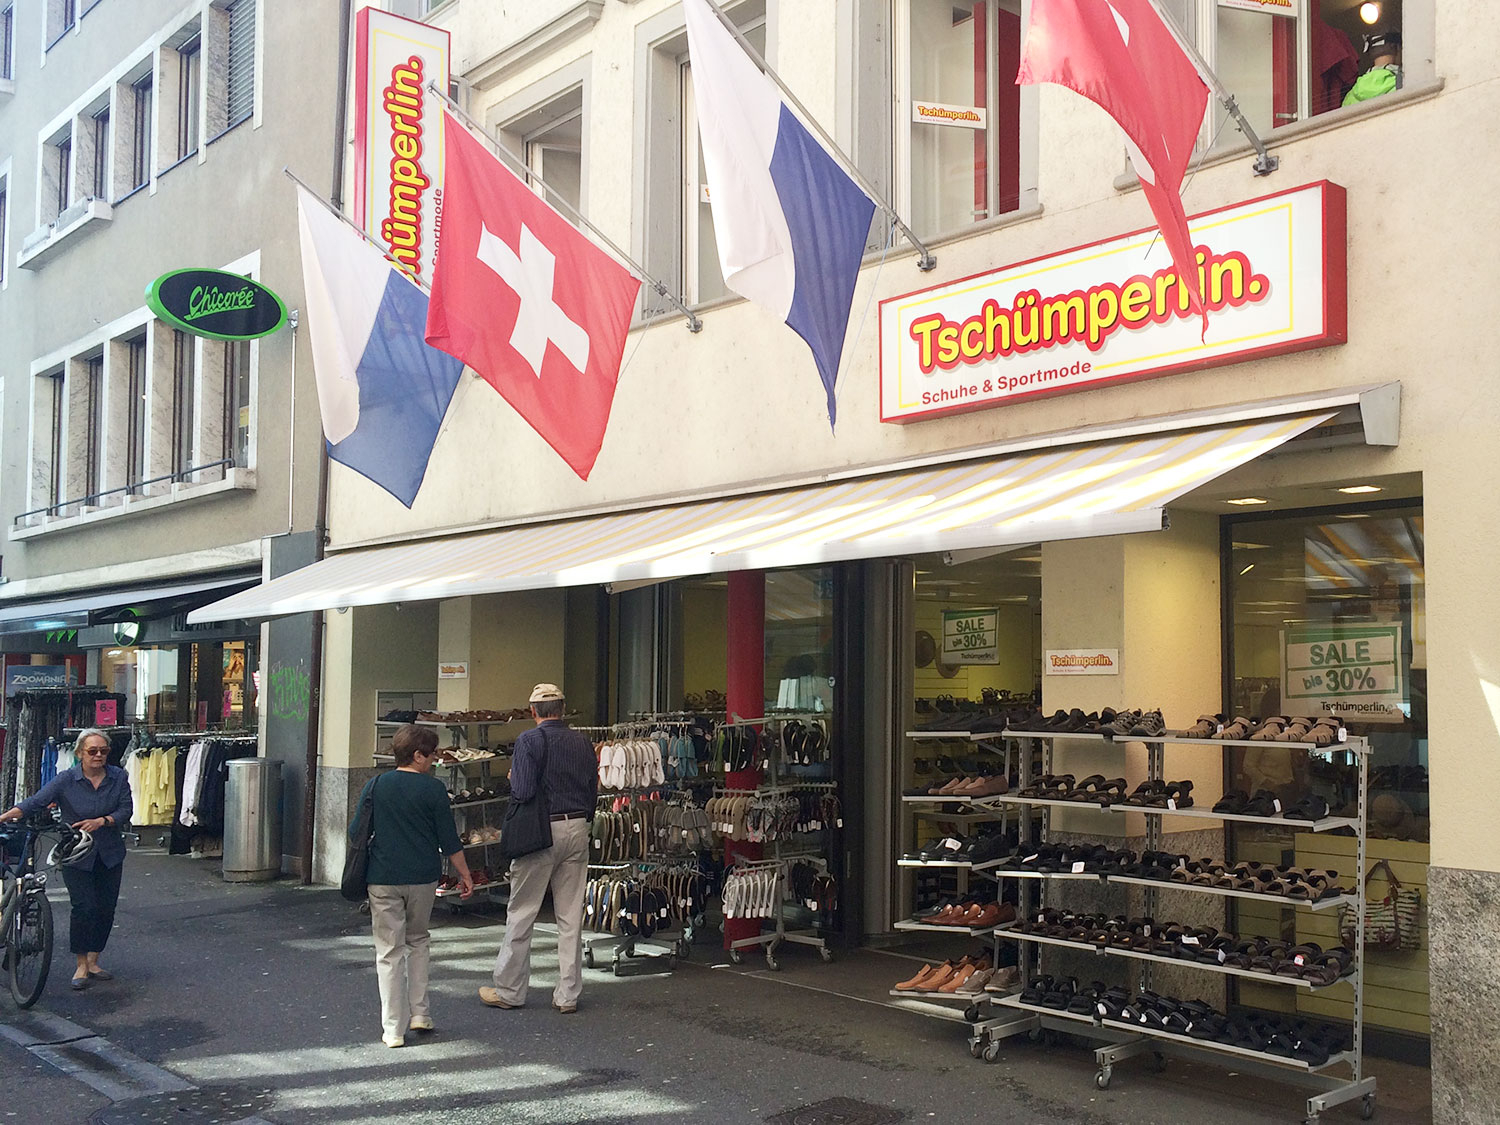 Das Familienunternehmen Tschümperlin an der Hertensteinstrasse: Will sich mit Beratung gegen internationale Anbieter behaupten.  (Bild: jwy)